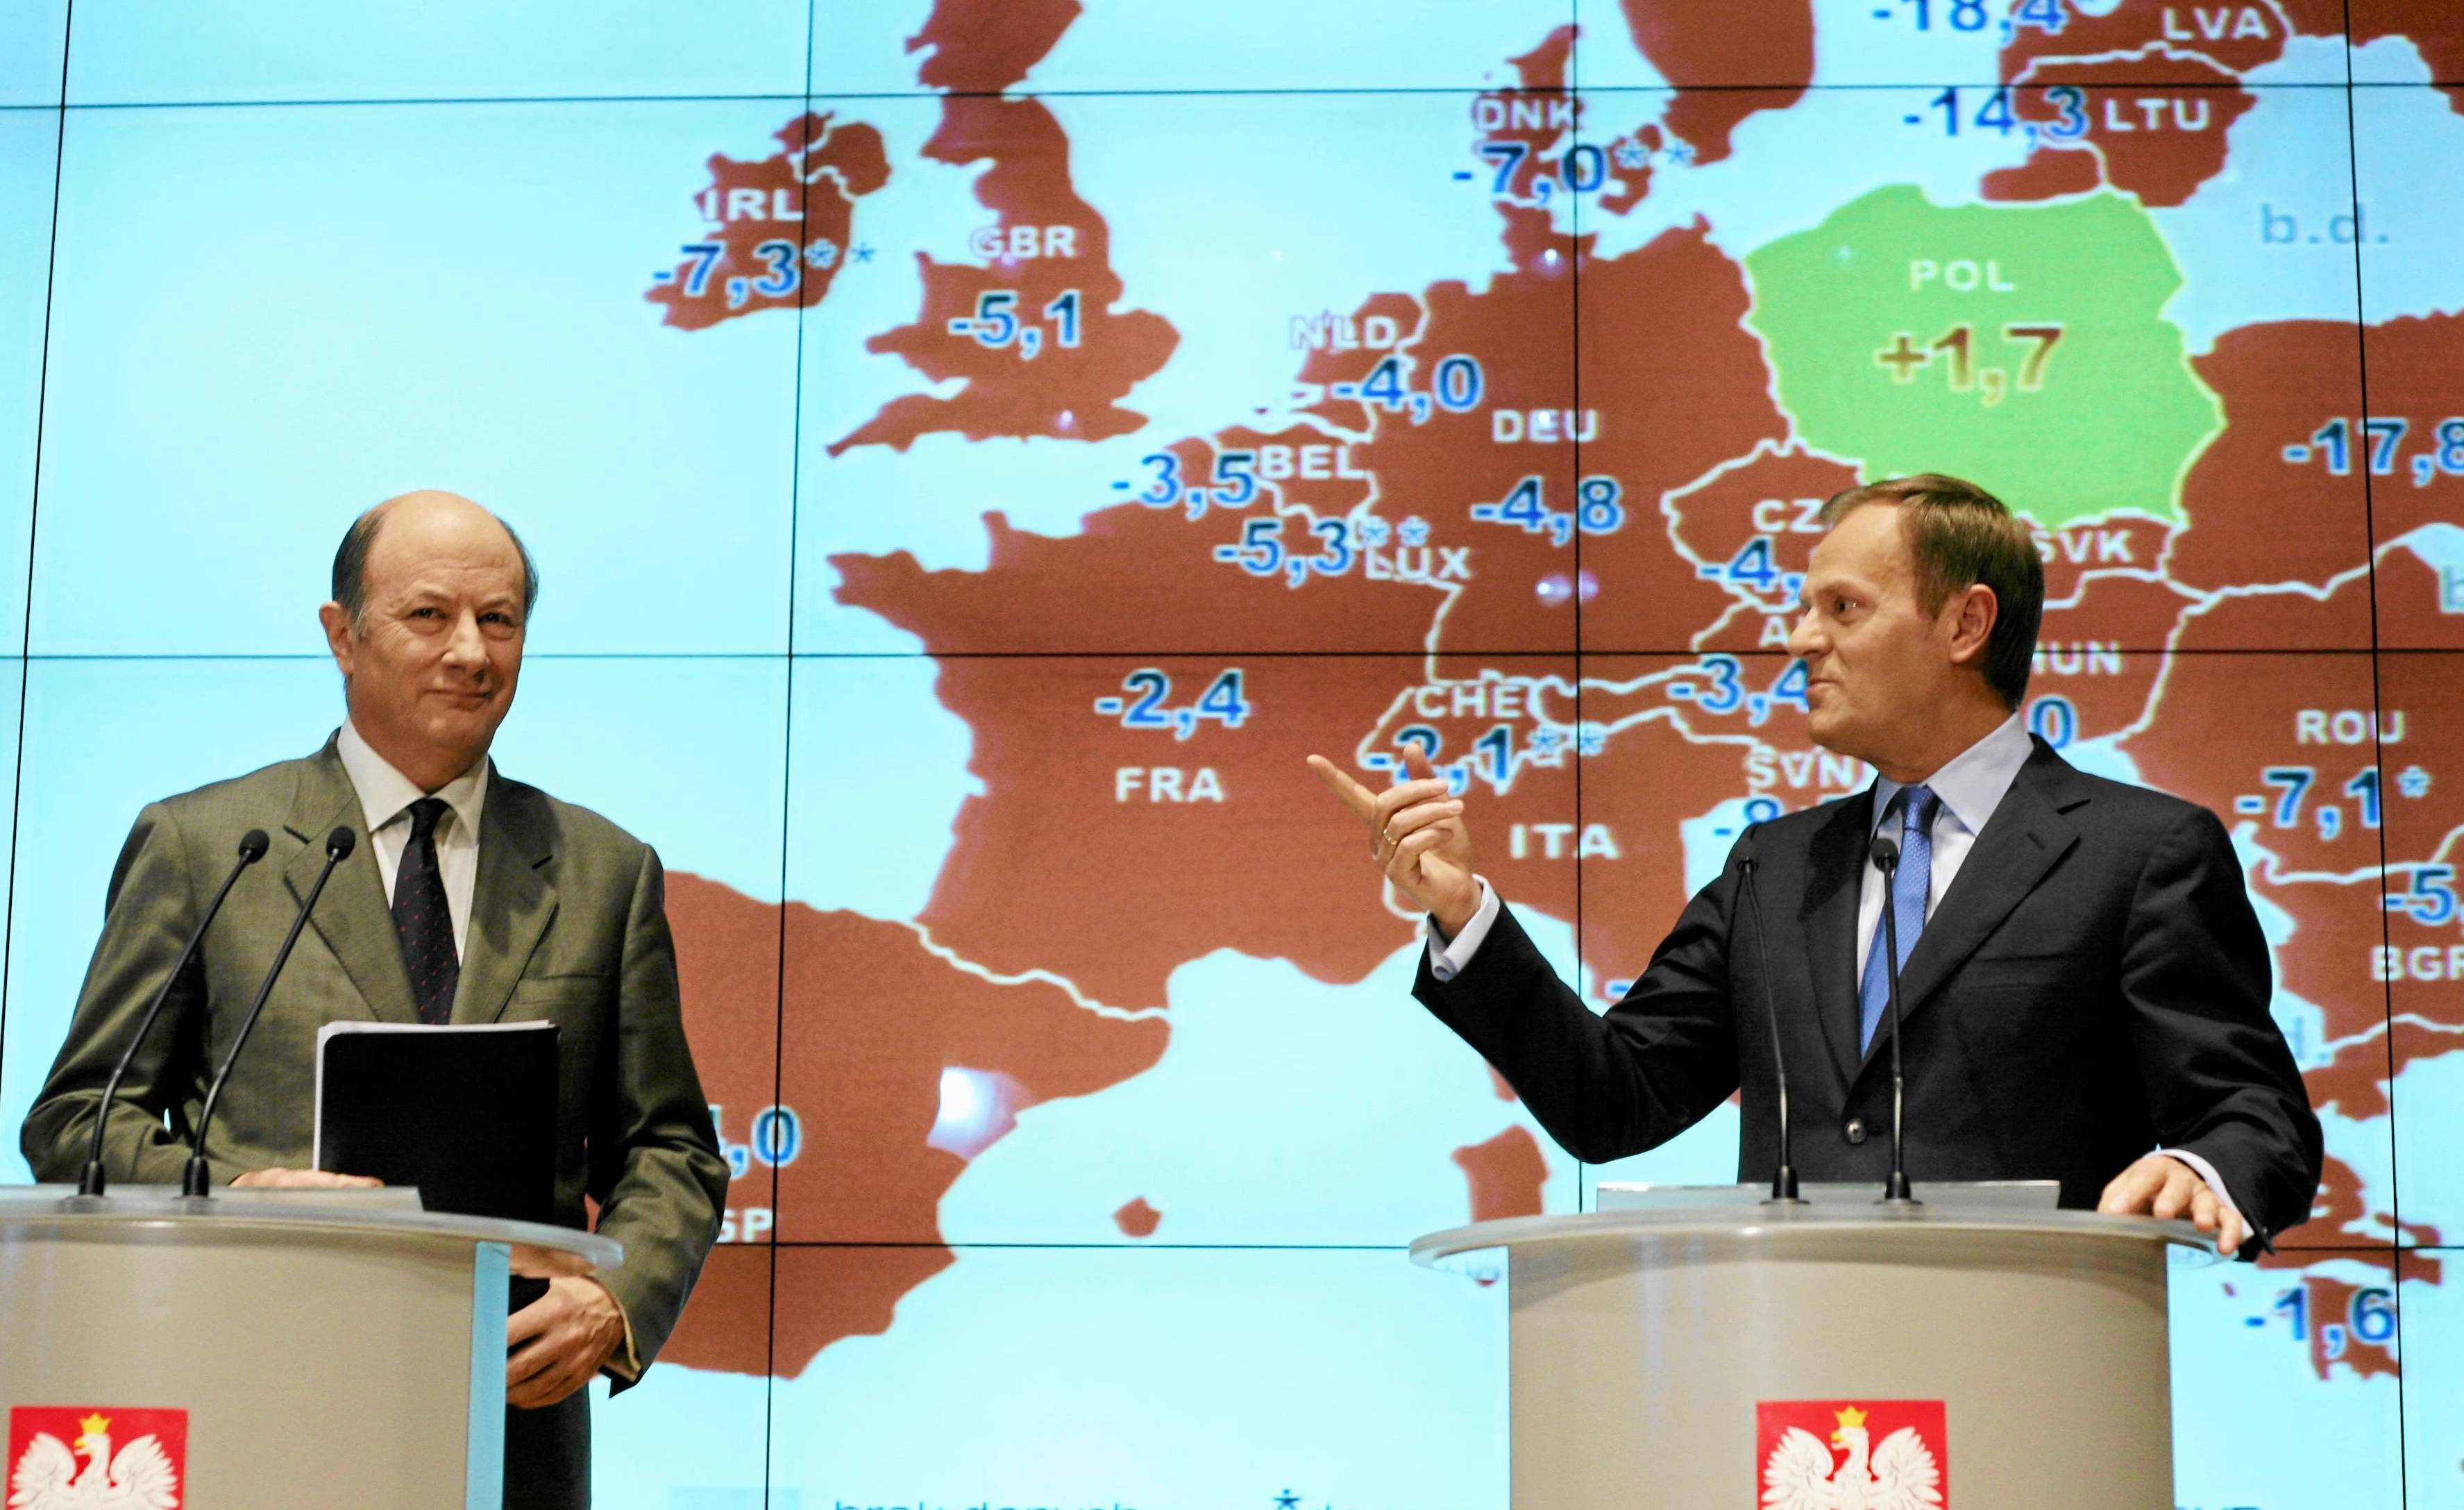 Dwaj mężczyźni na tle mapy europy. To Jacek Rostowski i Donald Tusk. Na mapie Polska jest na zielono, a inne kraje na czerwono.